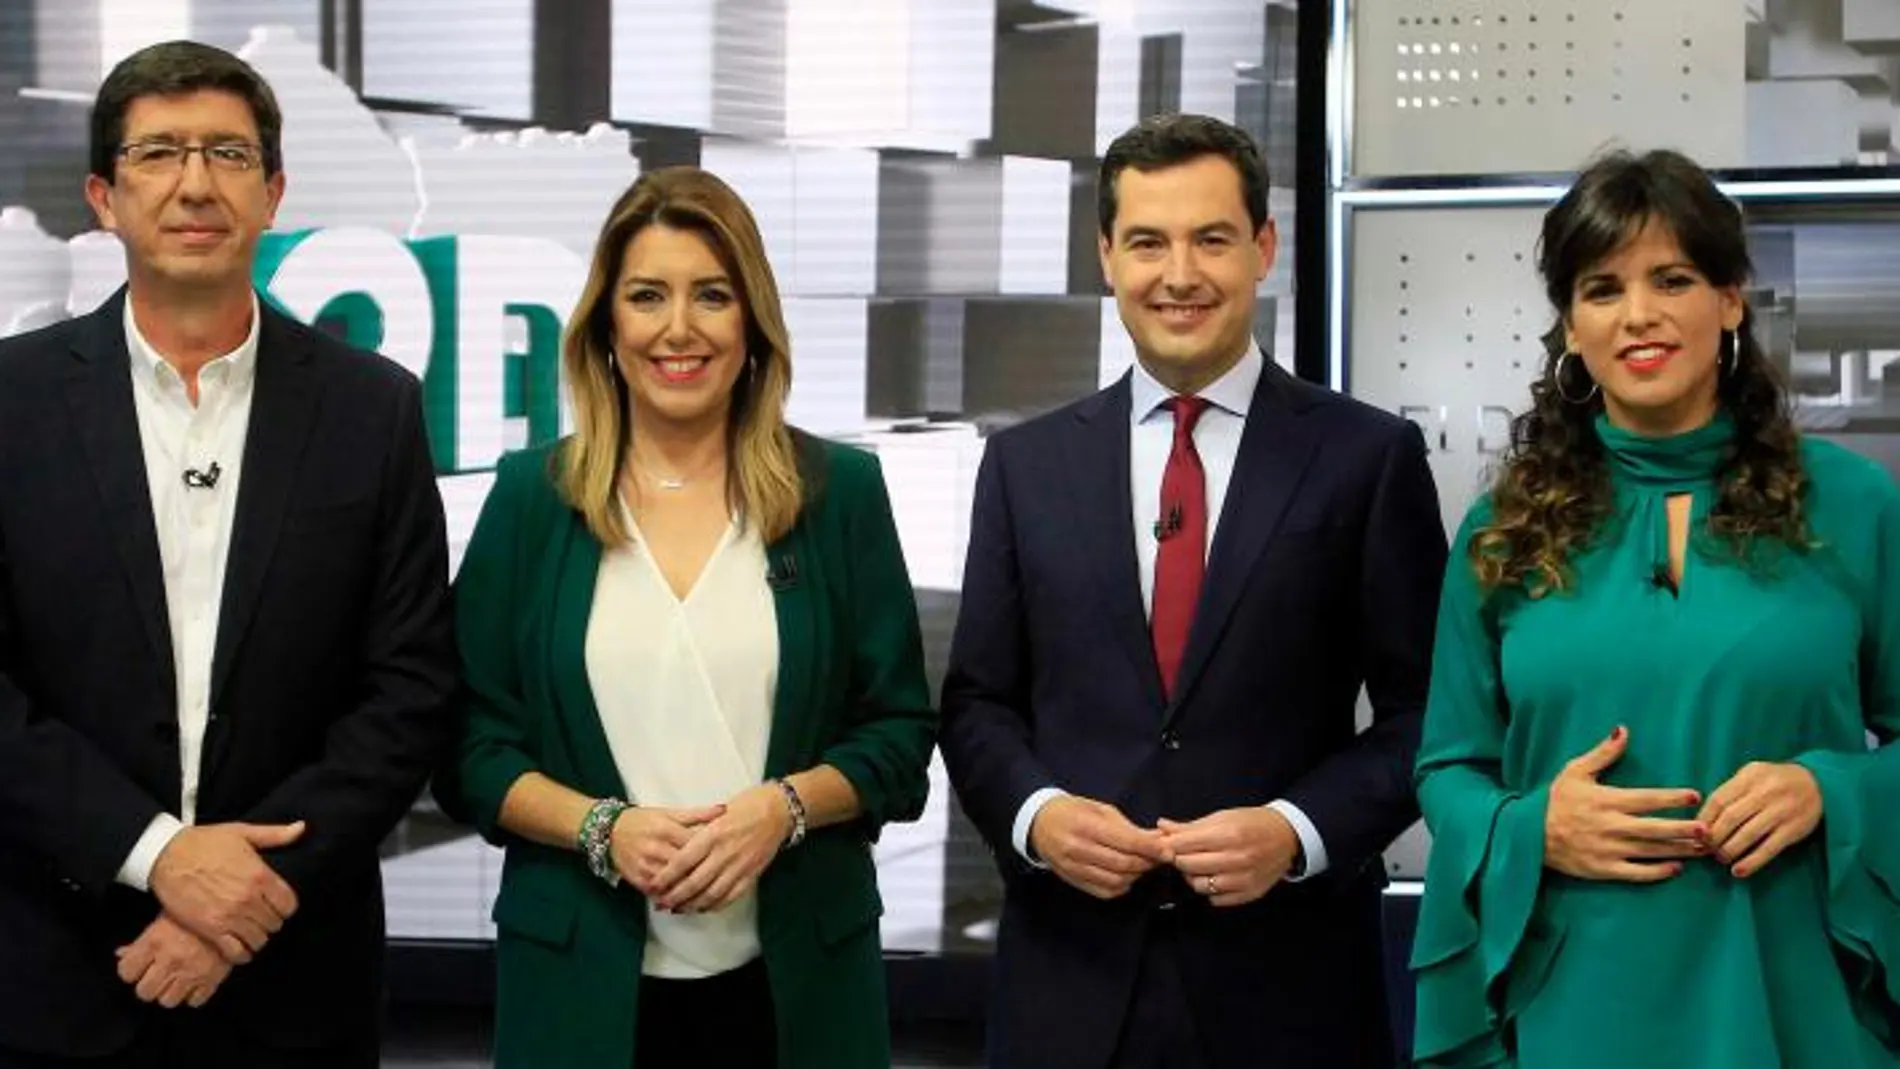 Juan Marín, Susana Díaz, Juanma Moreno y Teresa Rodríguez, ayer, momentos antes del debate en la RTVA